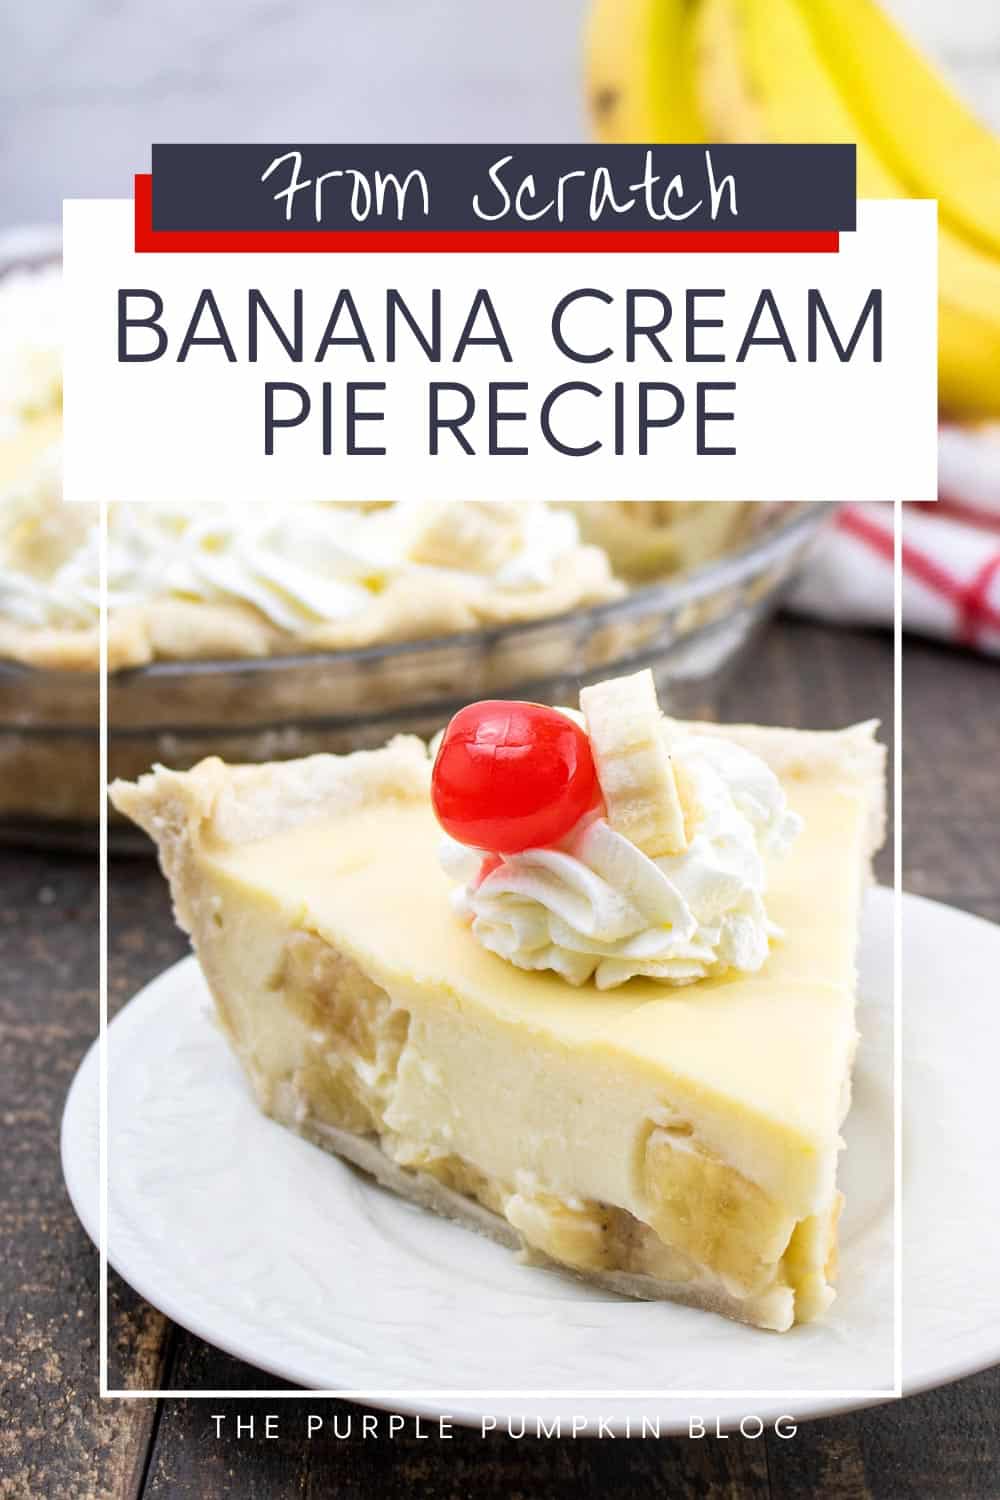 Banana-Cream-Pie-Recipe-From-Scratch